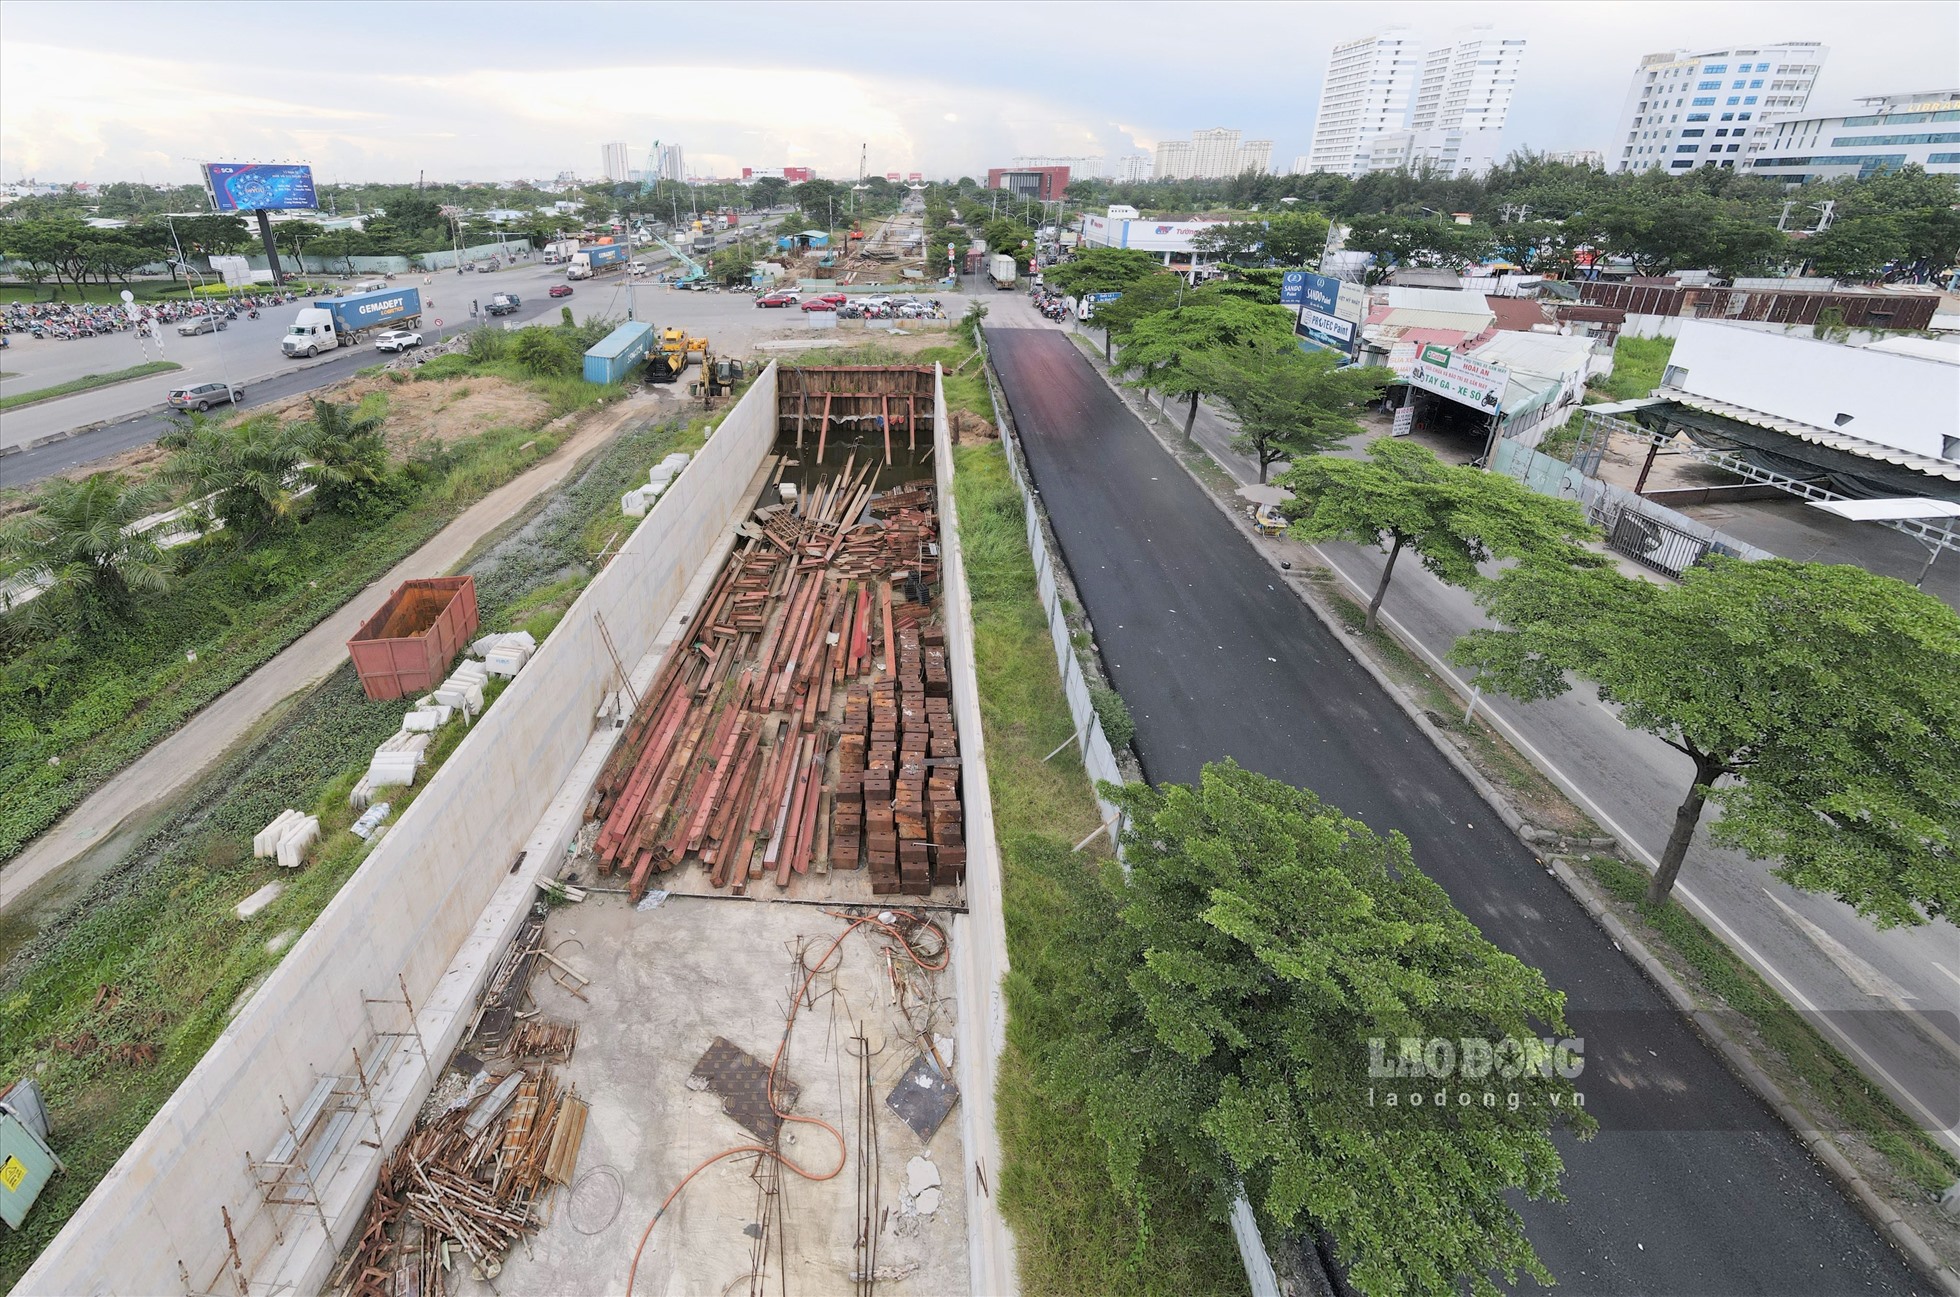 Sở GTVT TPHCM vừa có văn bản nhắc nhở lần thứ ba đối với chủ đầu tư dự án xây dựng hầm chui nút giao thông Nguyễn Văn Linh - Nguyễn Hữu Thọ, yêu cầu đảm bảo an toàn giao thông trong phạm vi dự án.